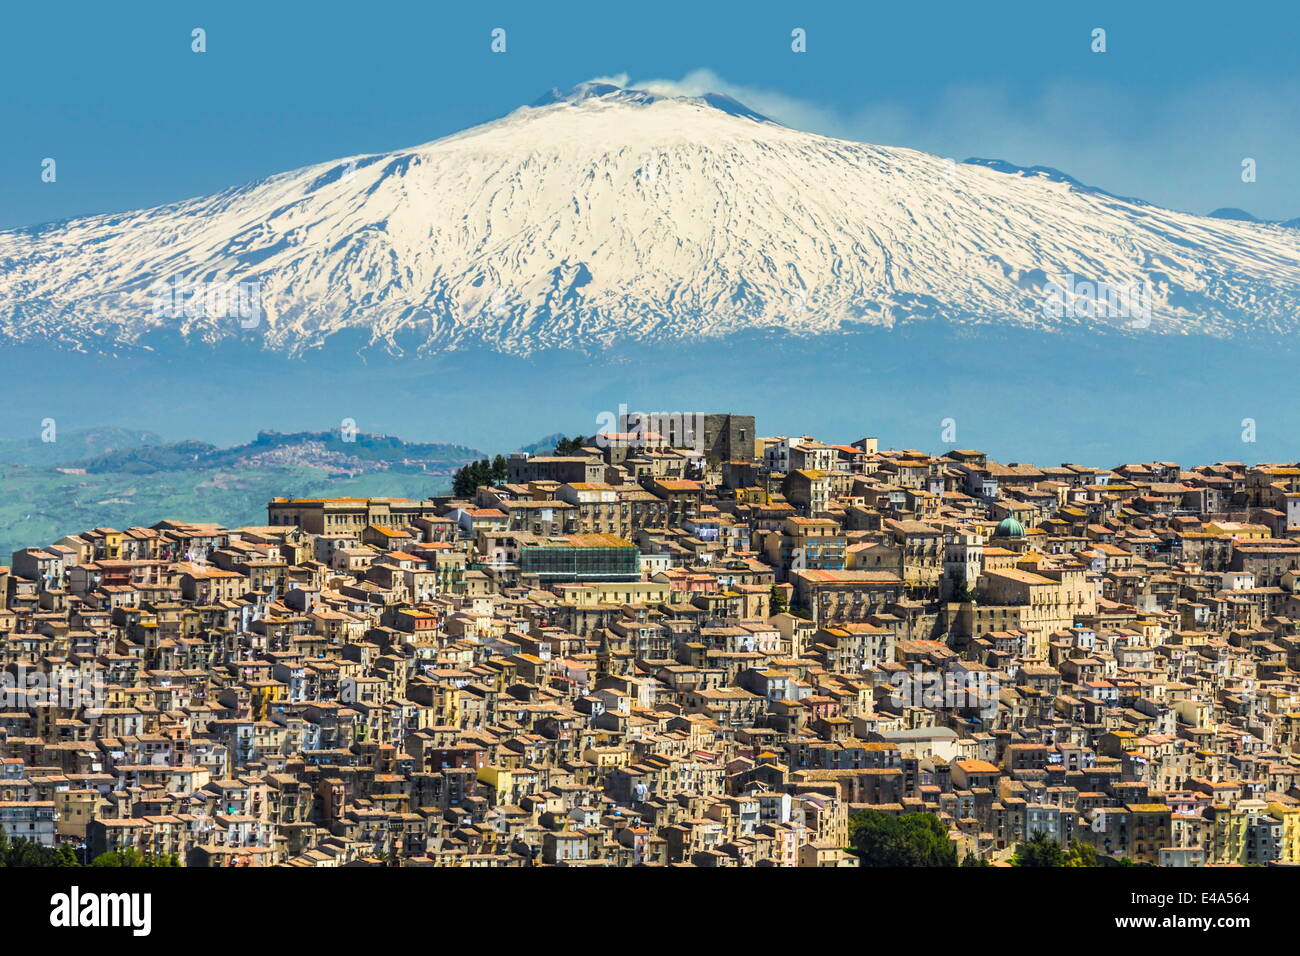 Hill town avec fond de volcan Etna enneigé, Gangi, Province de Palerme, Sicile, Italie, Méditerranée, Europe Banque D'Images